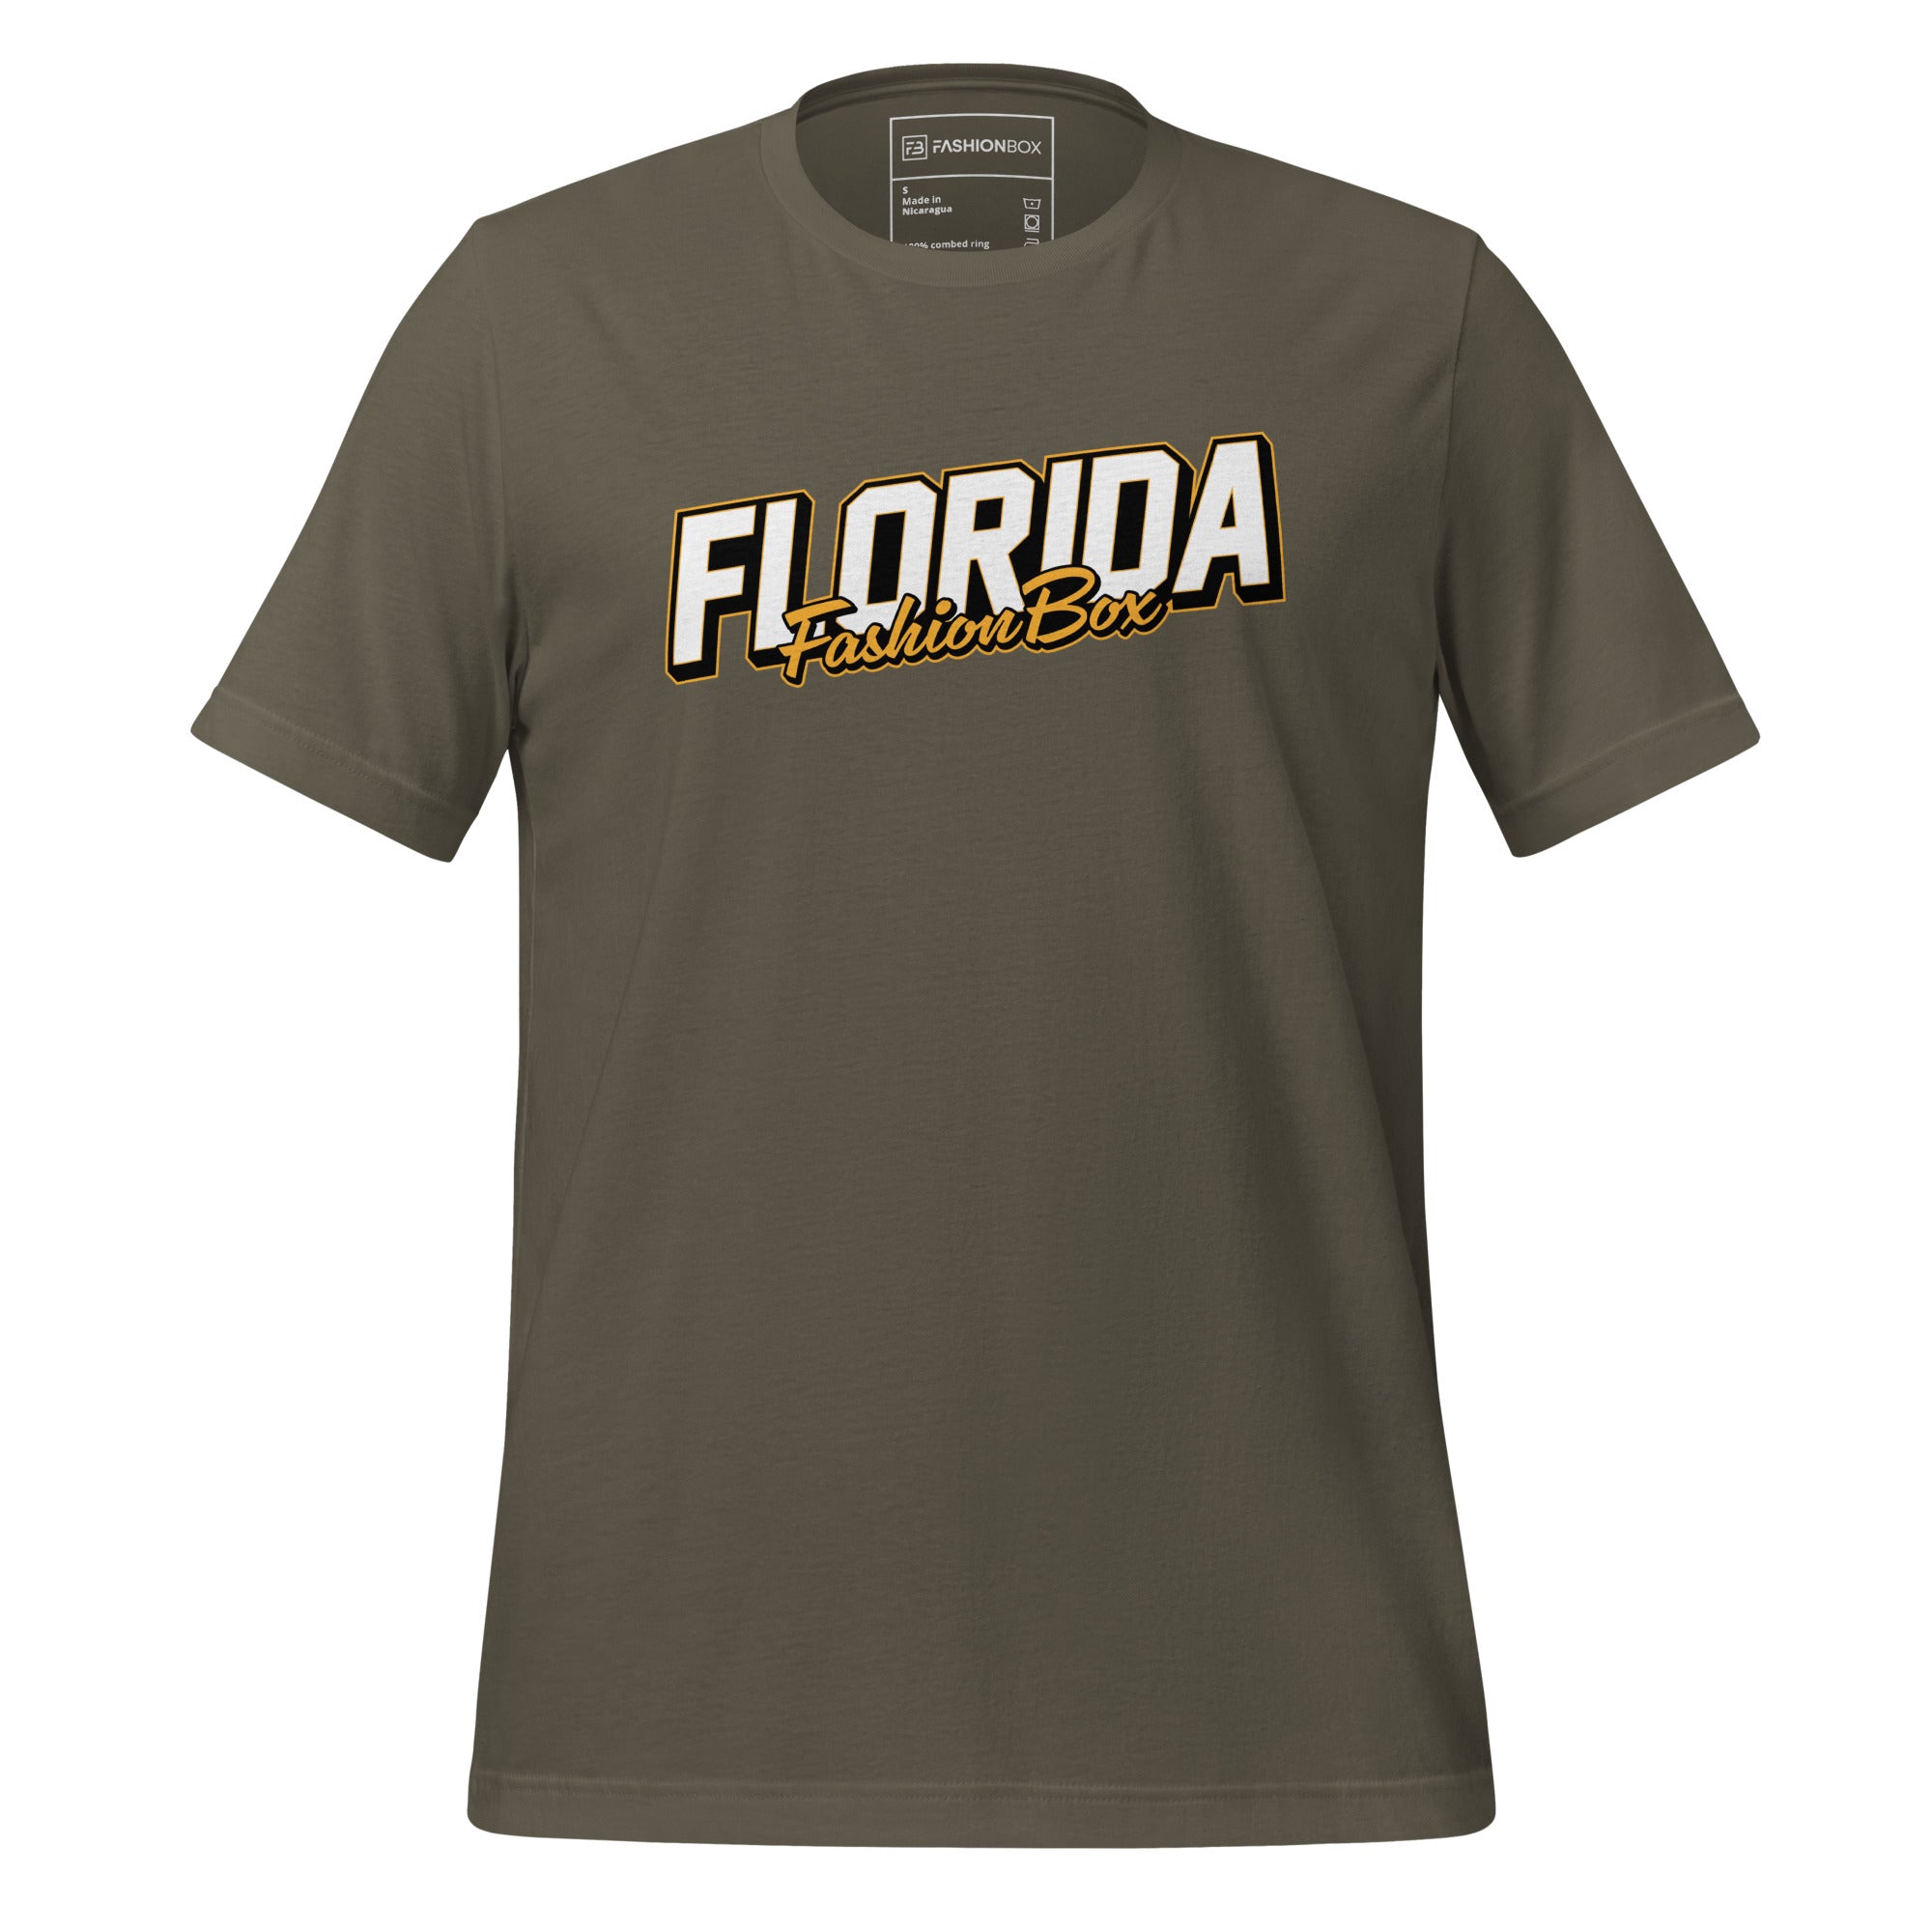 Florida FB t-shirt